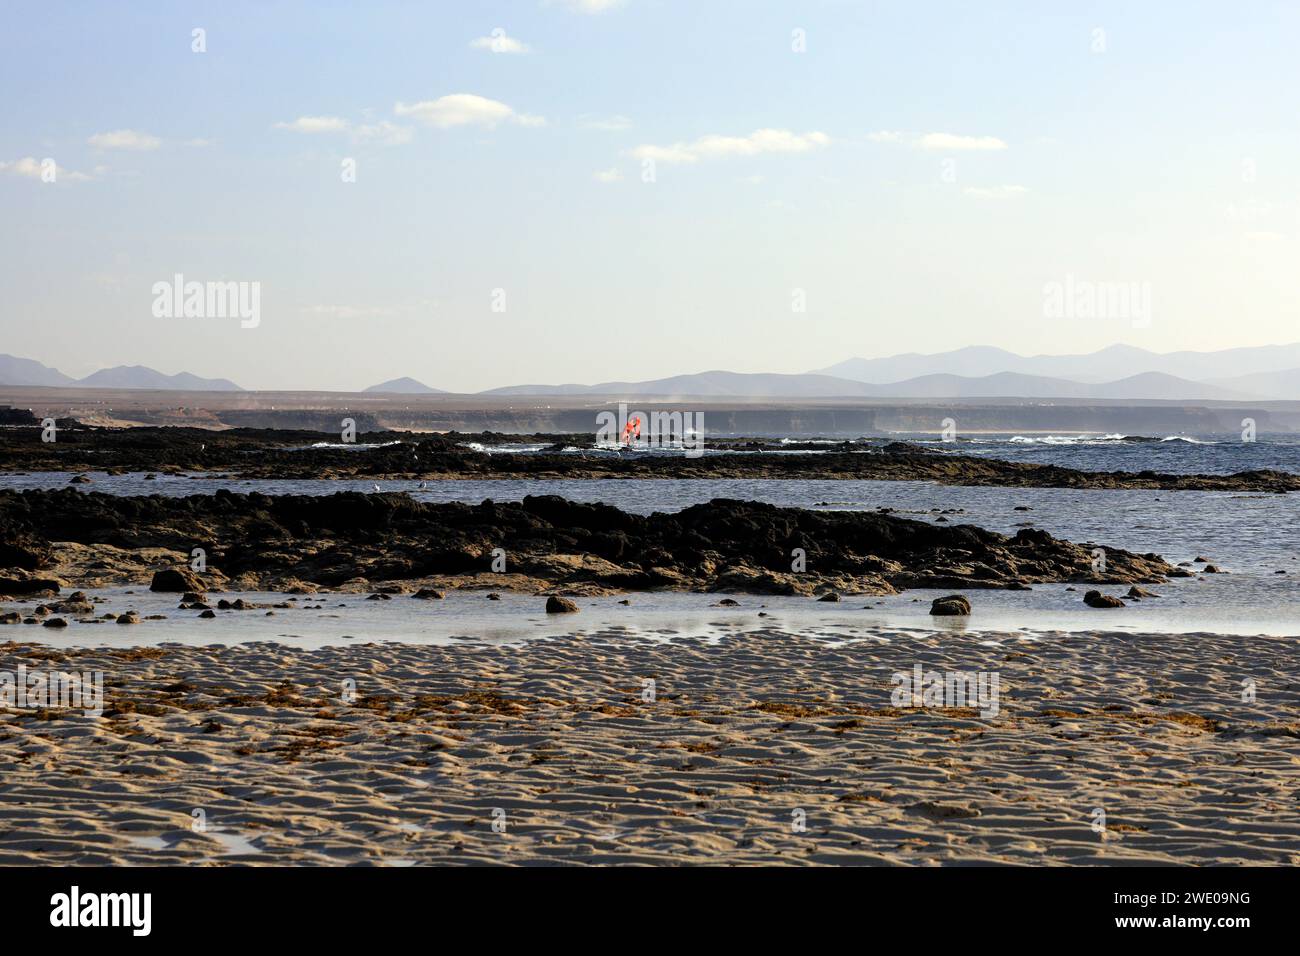 Motifs de vagues dans le sable à marée basse, Fuerteventura, îles Canaries. Prise en novembre 2023 Banque D'Images